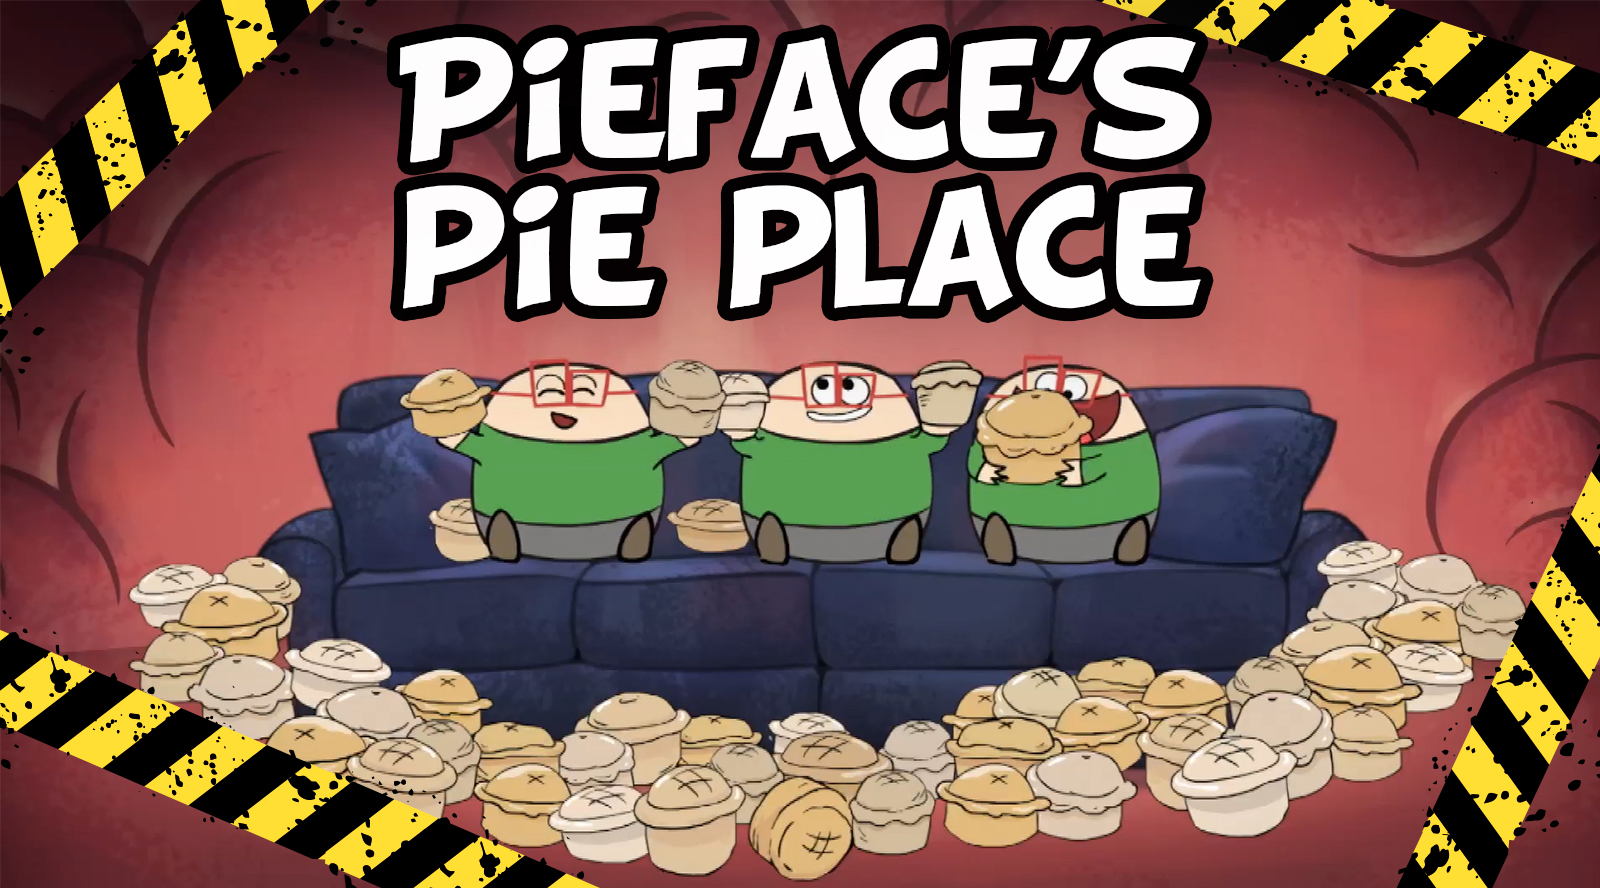 Pieface's Pie Place